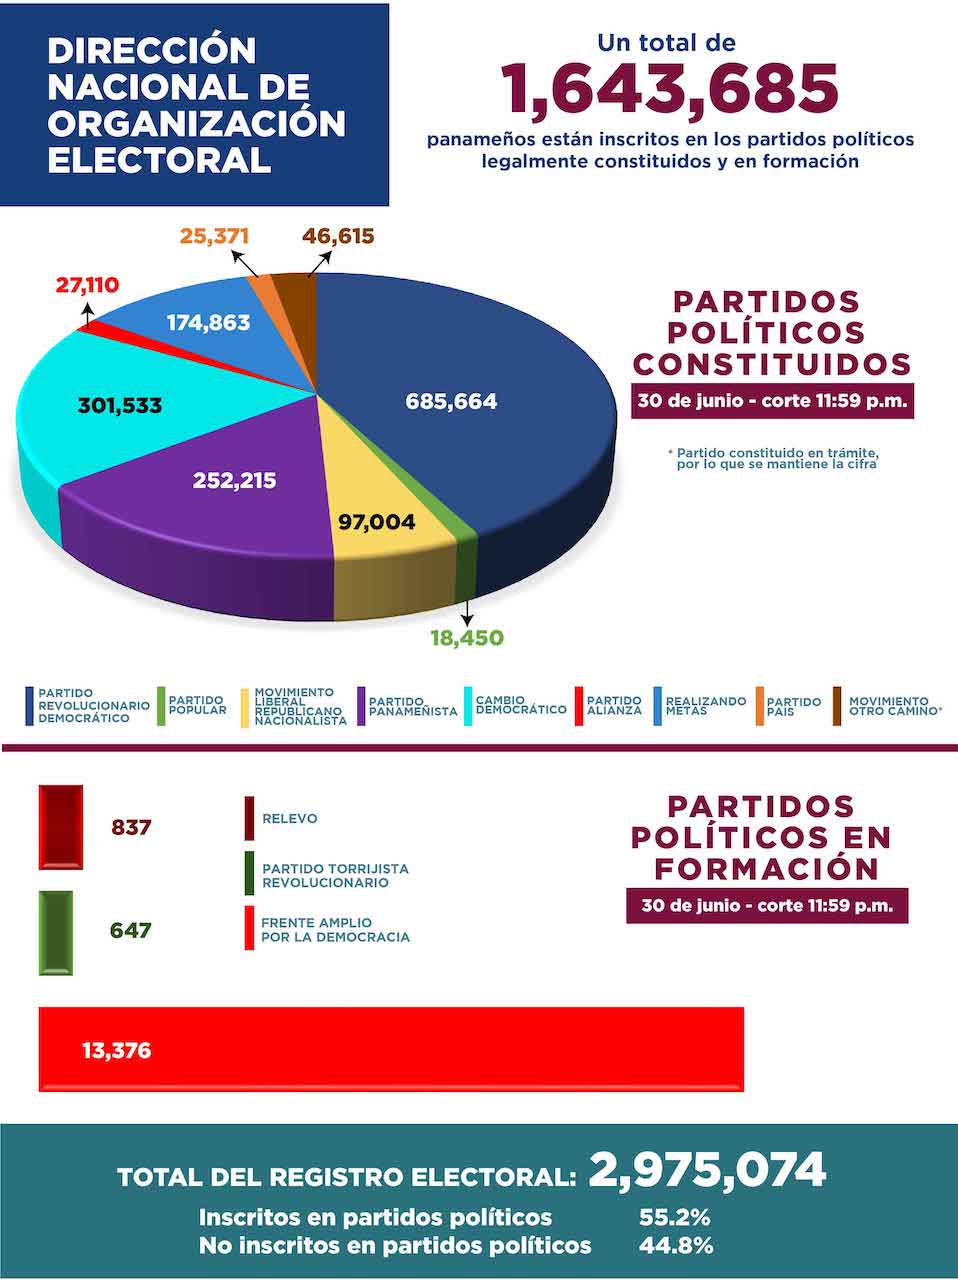 Registro electoral de Panamá: 2,975,074 personas, de estas el 55.2% están inscritas en partidos